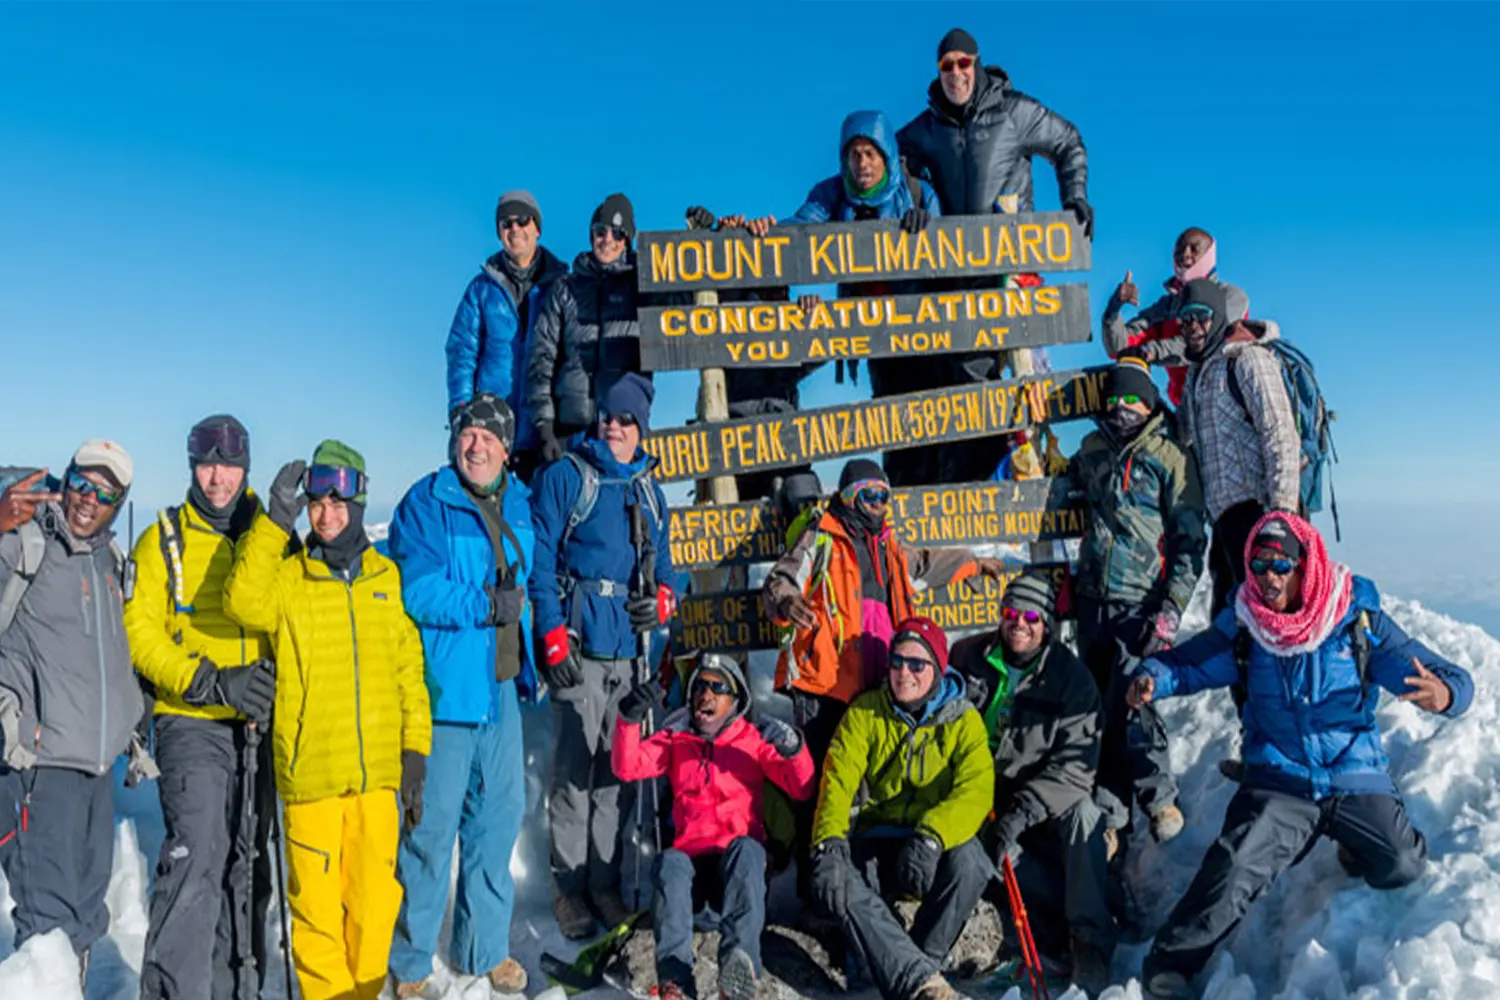 Mount Kilimanjaro group joning